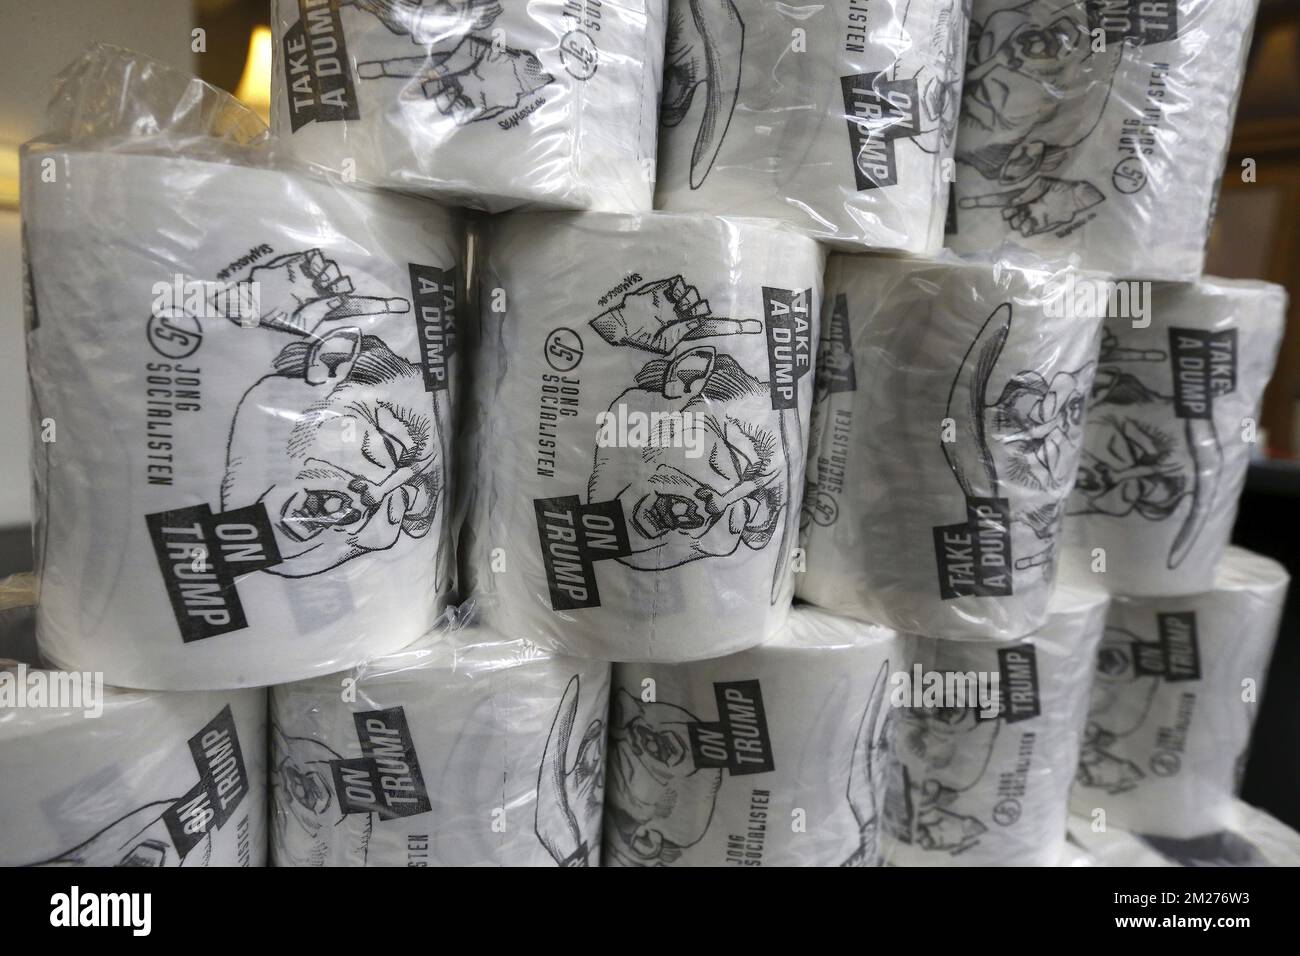 L'illustration montre le papier toilette « Take a dump on Trump » lors d'un congrès des socialistes flamands sp.a à Bruxelles, appelé « Europa Linksaf », dimanche 21 mai 2017. BELGA PHOTO NICOLAS MATERLINCK Banque D'Images